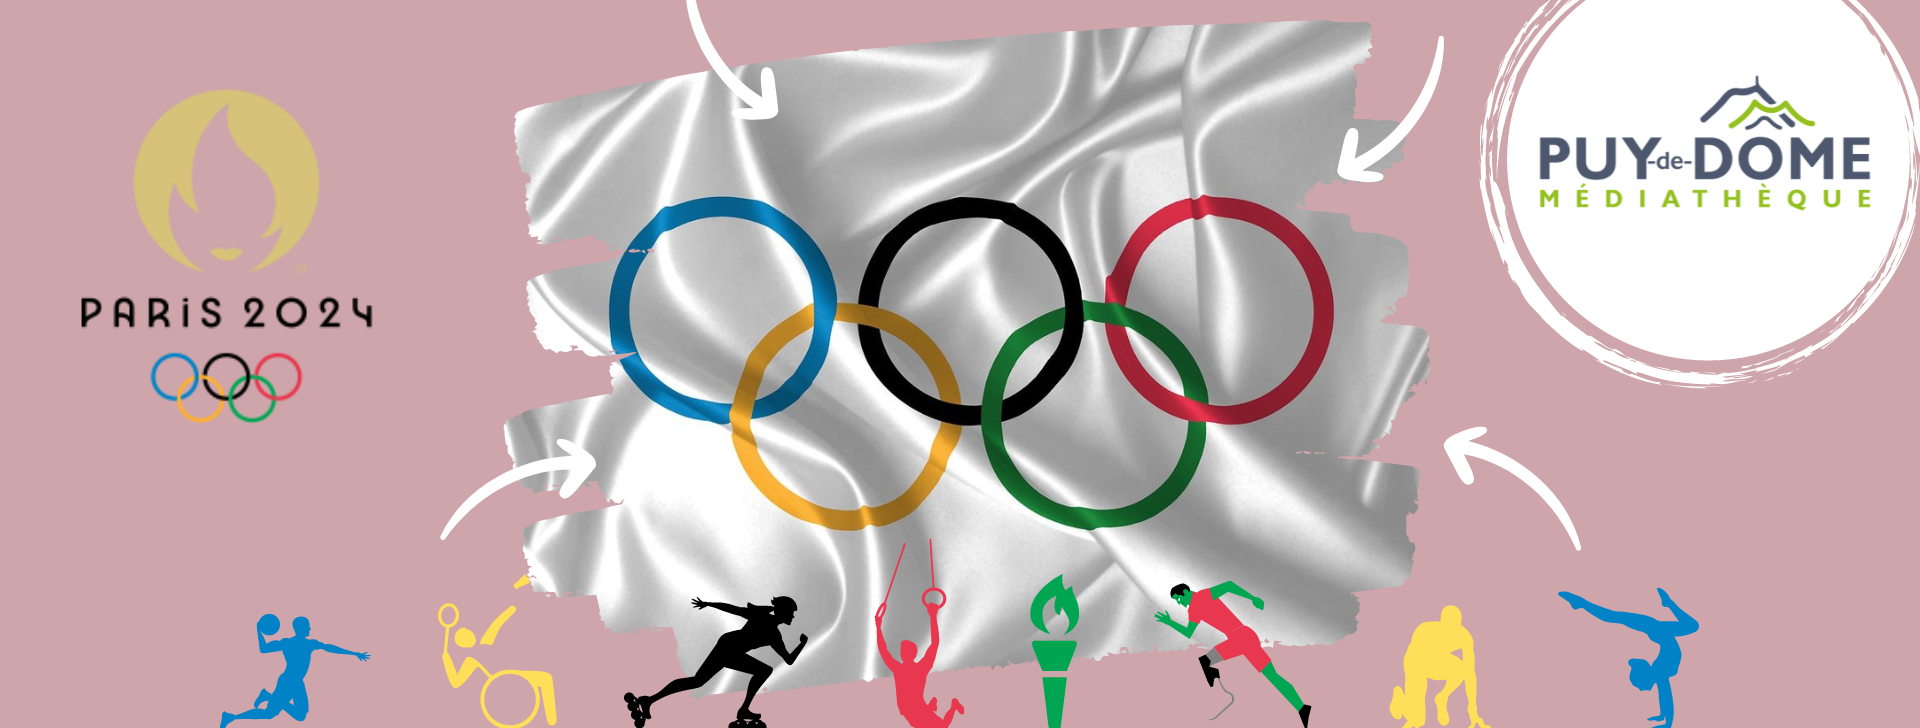 Photo représentant un drapeau avec les anneaux des JO, logo des JO PARIS 2024, figurines sportives